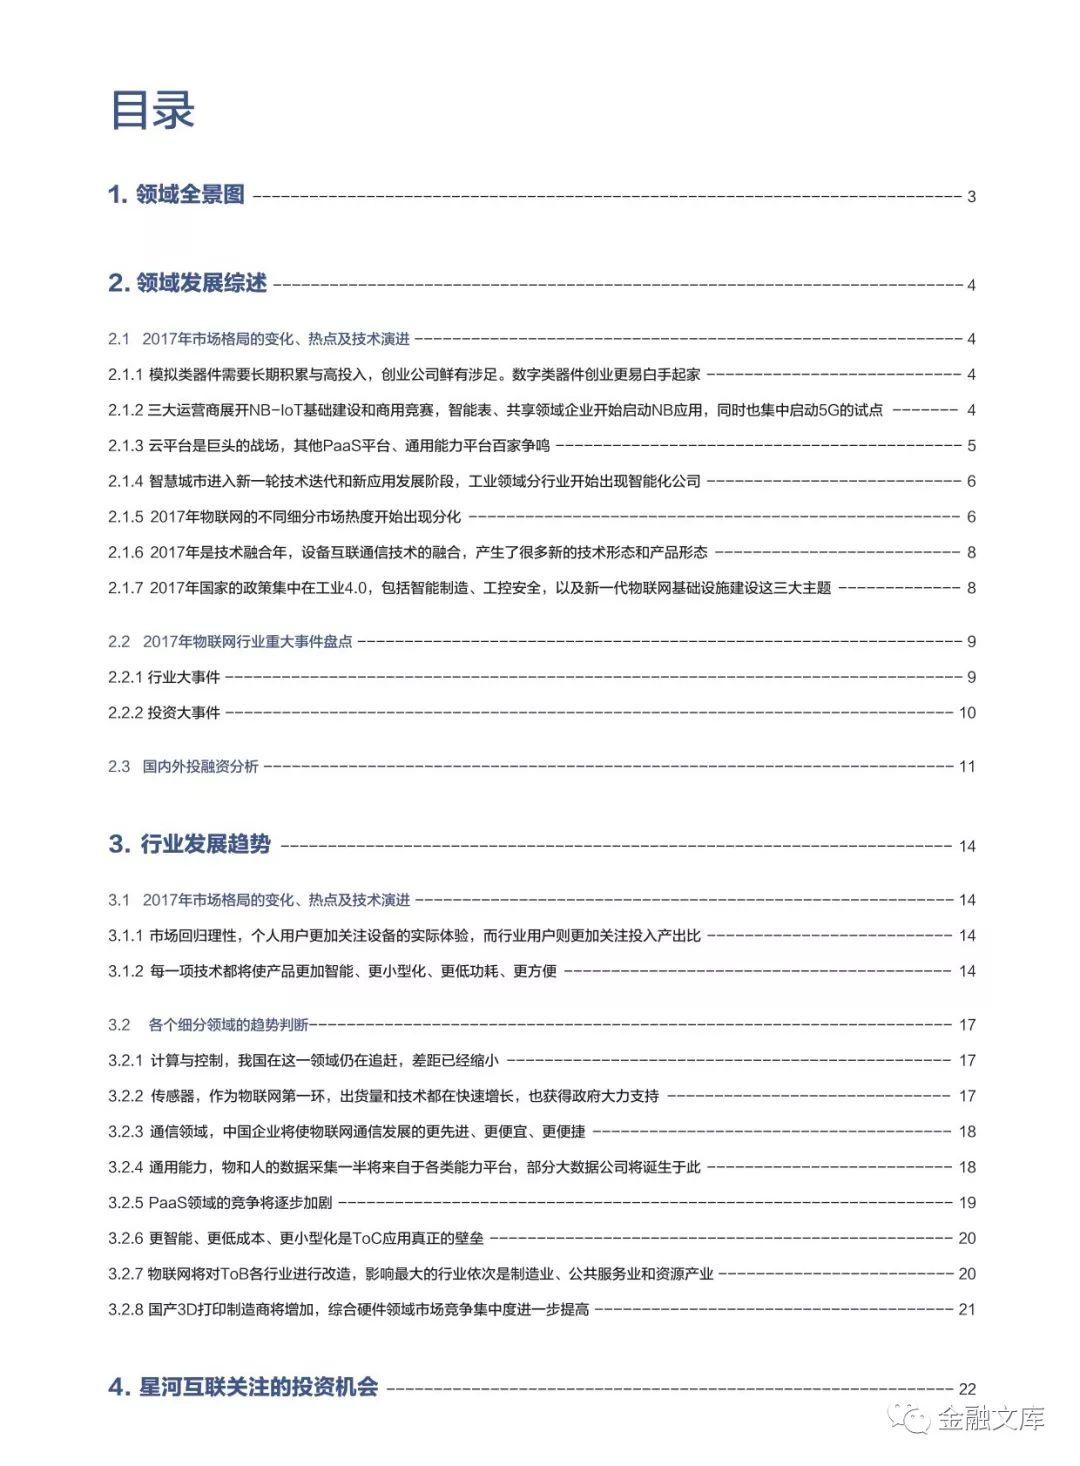 2018中国物联网行业白皮书